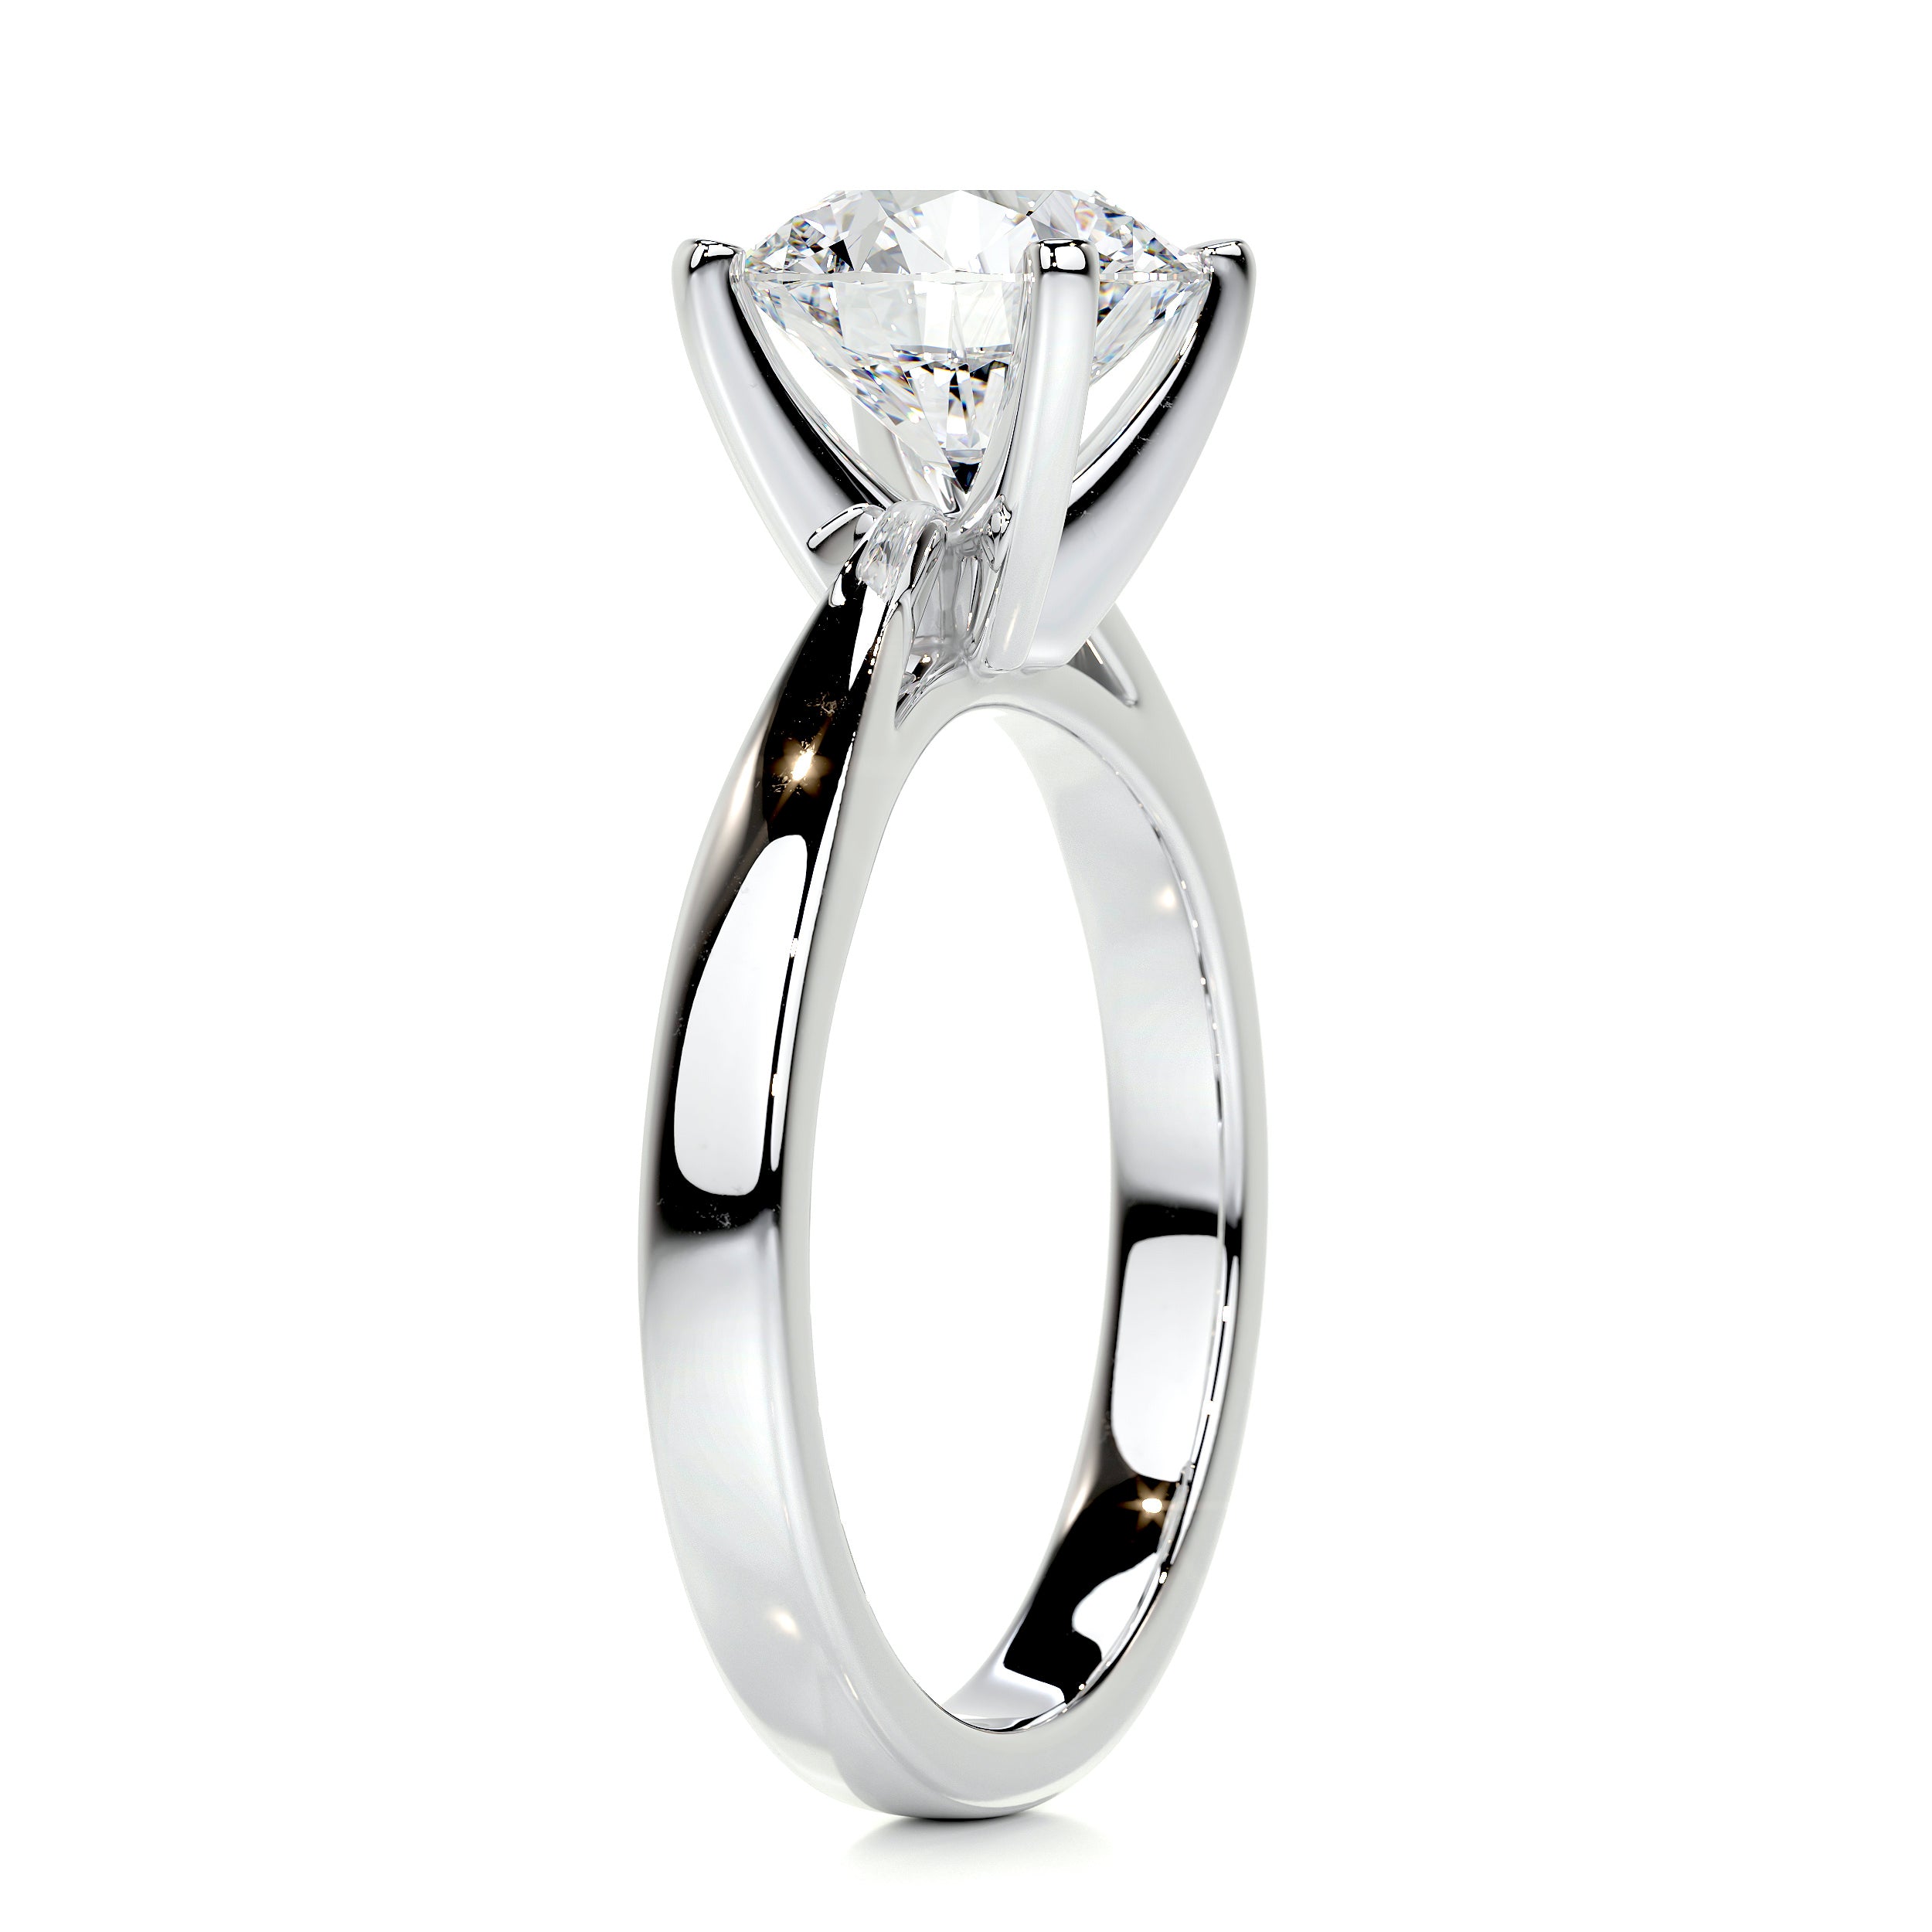 Diana Diamond Engagement Ring   (2 Carat) -14K White Gold